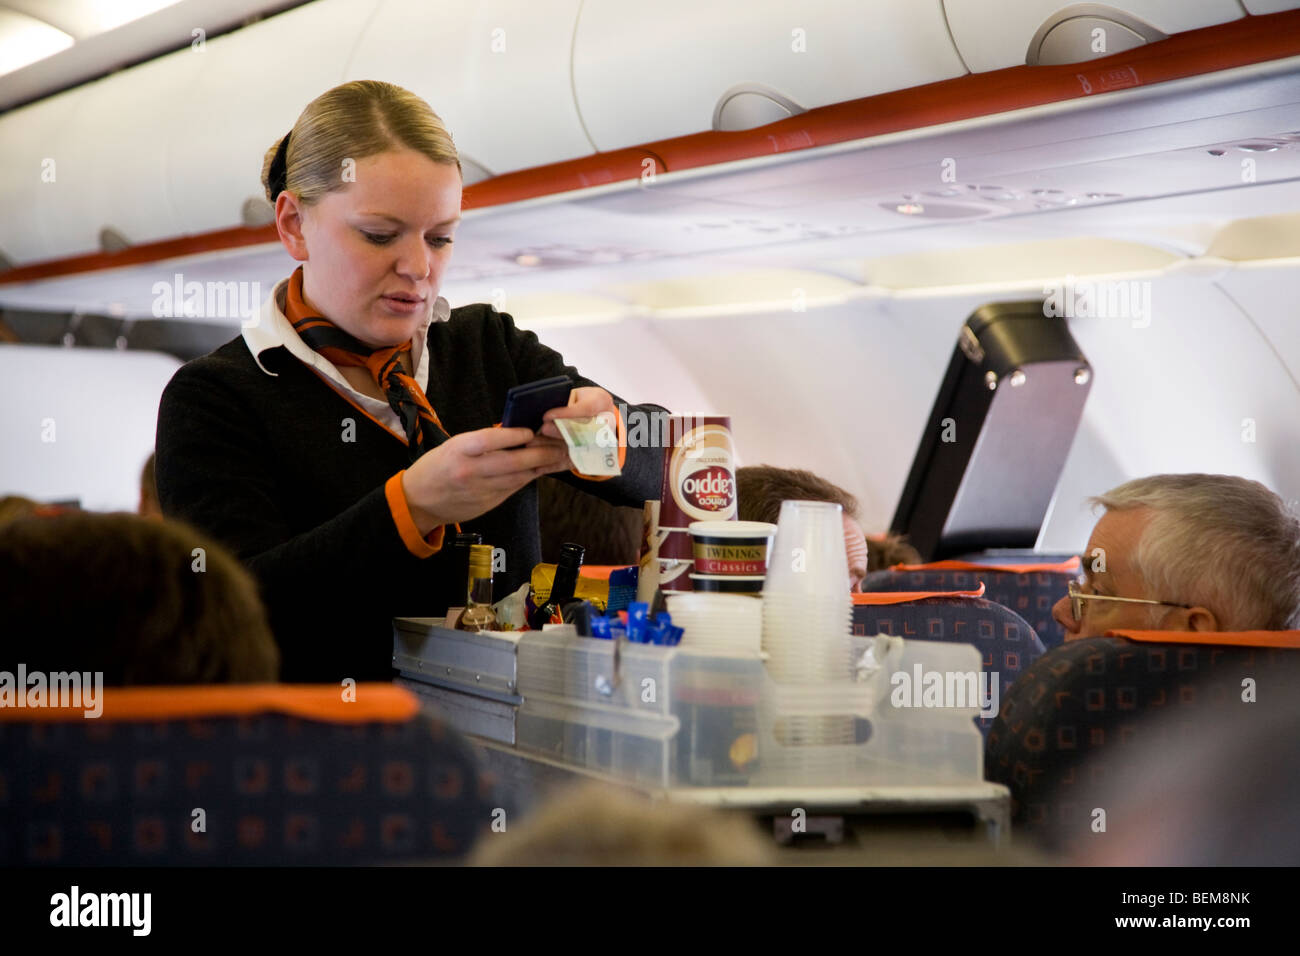 L'équipage de cabine / hôtesse de l'air sert des boissons et des collations à des passagers d'un trolley panier lors d'un vol Easyjet Banque D'Images